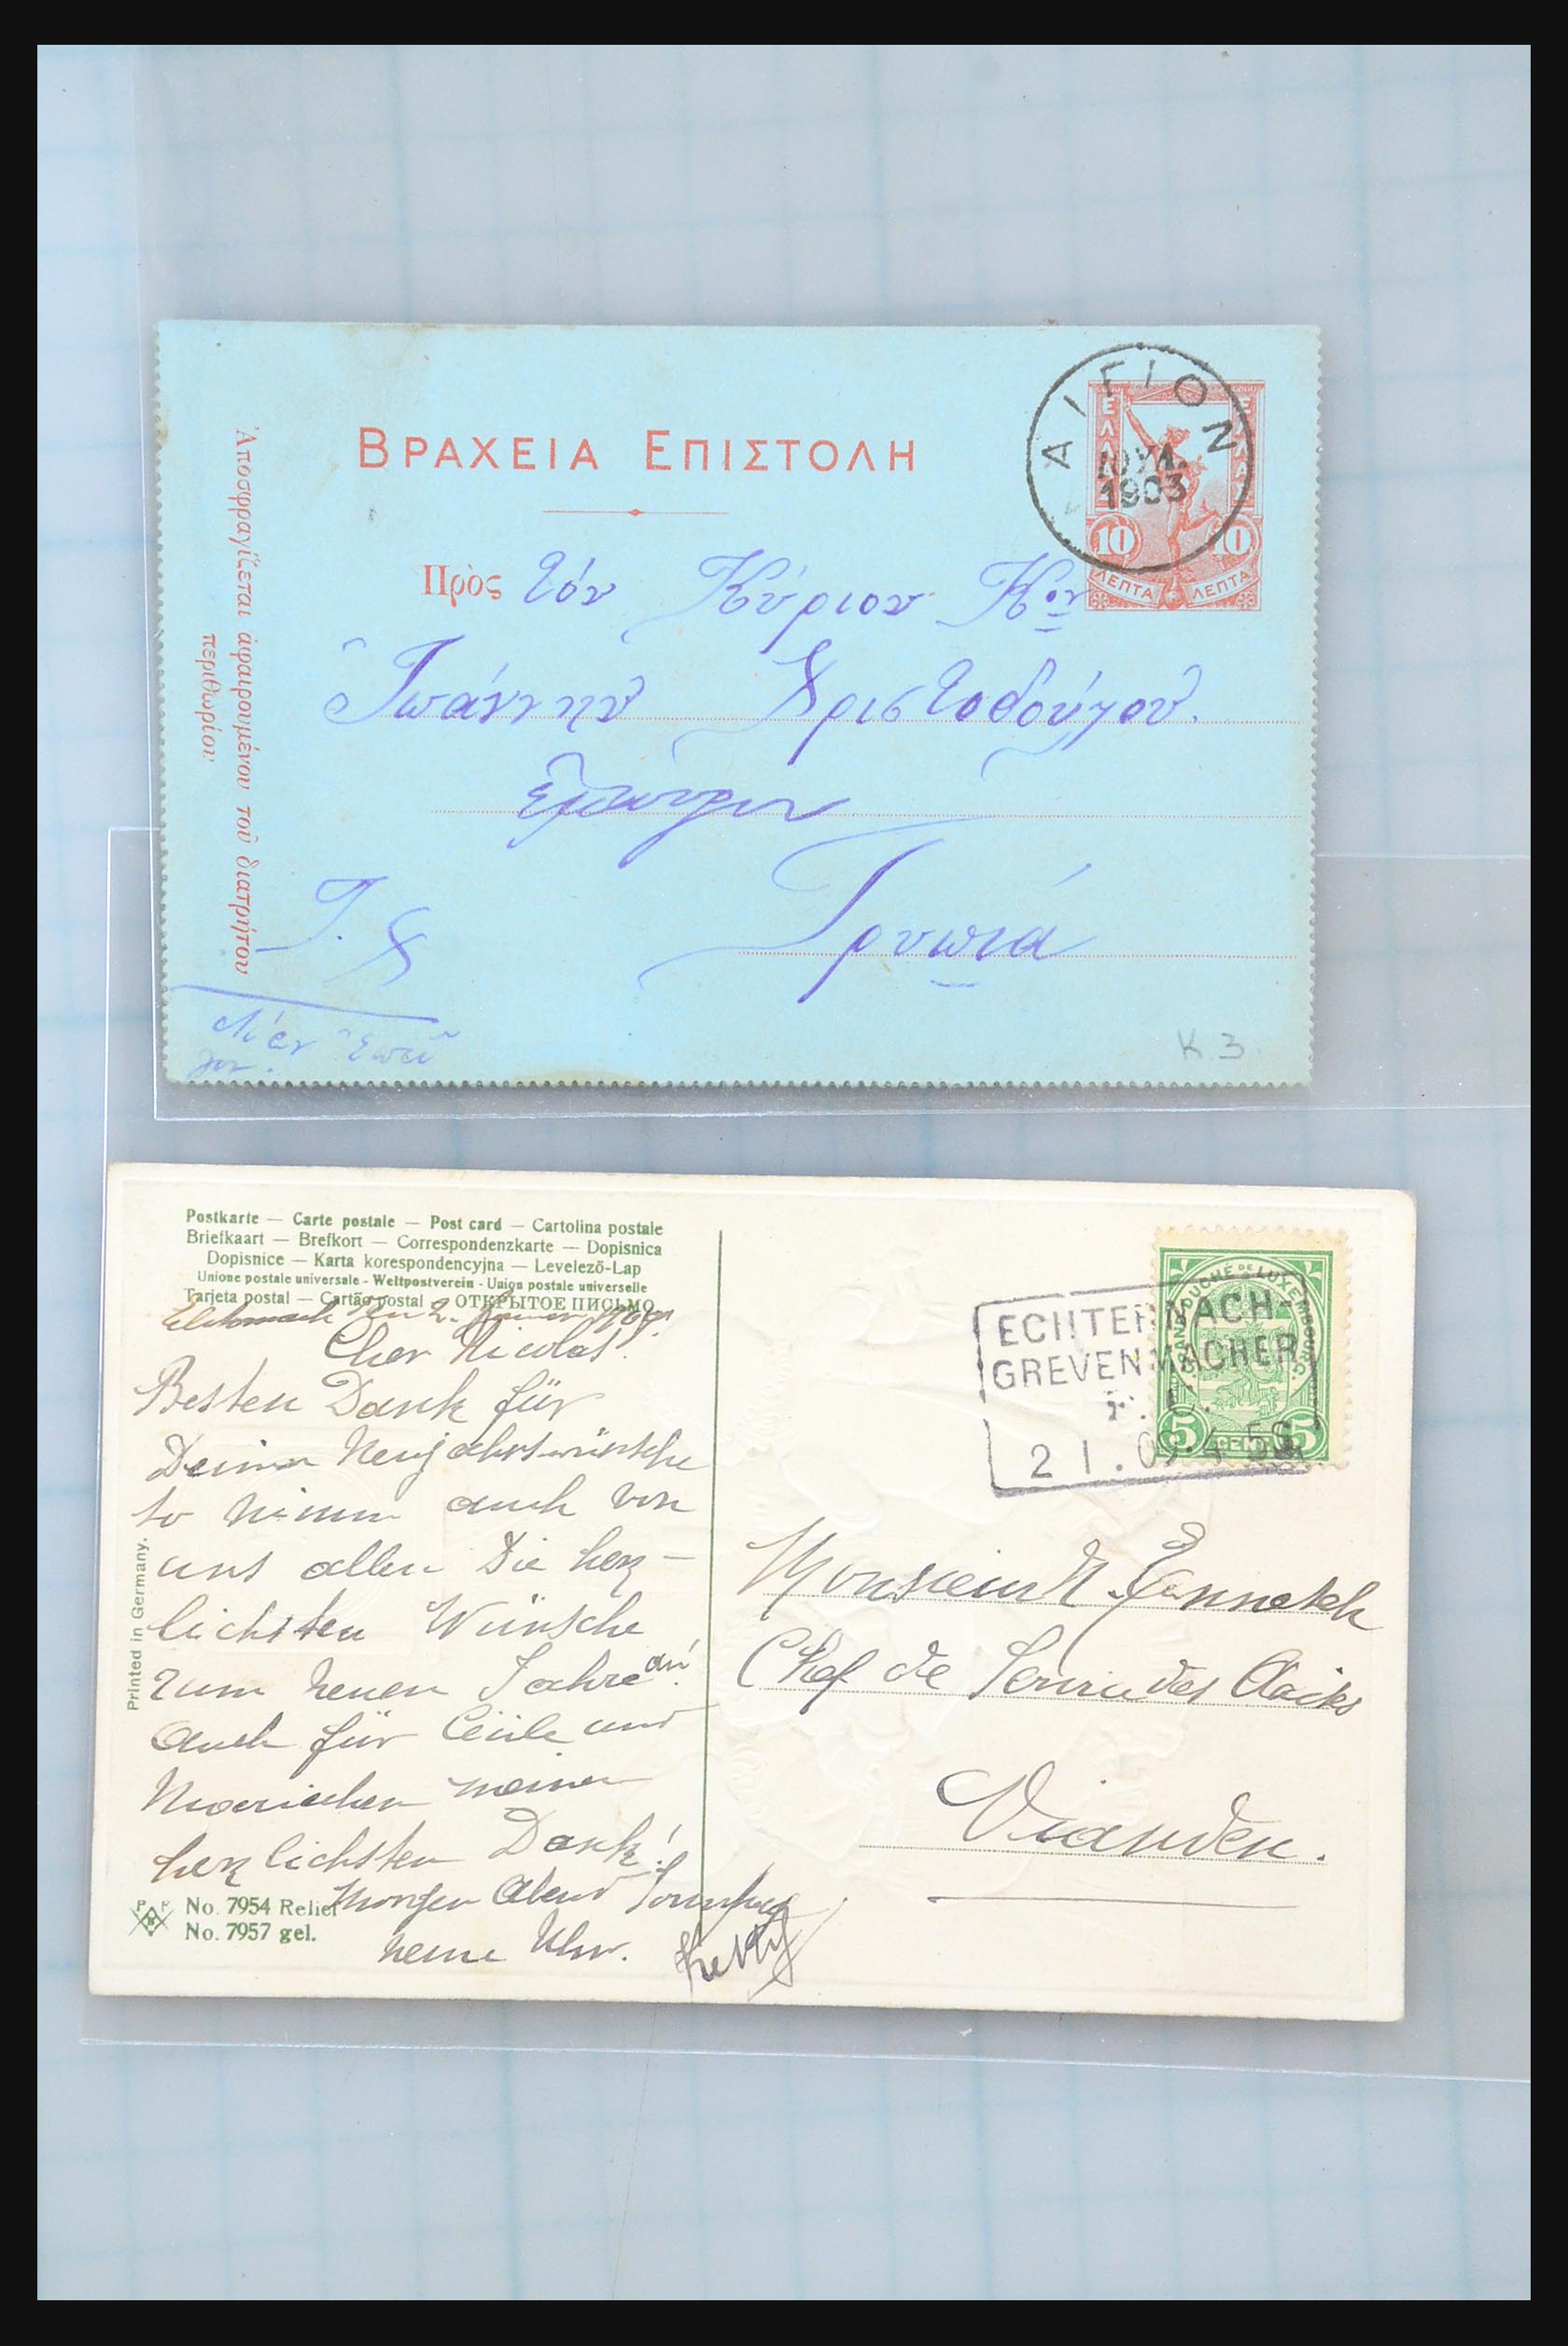 31358 107 - 31358 Portugal/Luxemburg/Griekenland brieven 1880-1960.